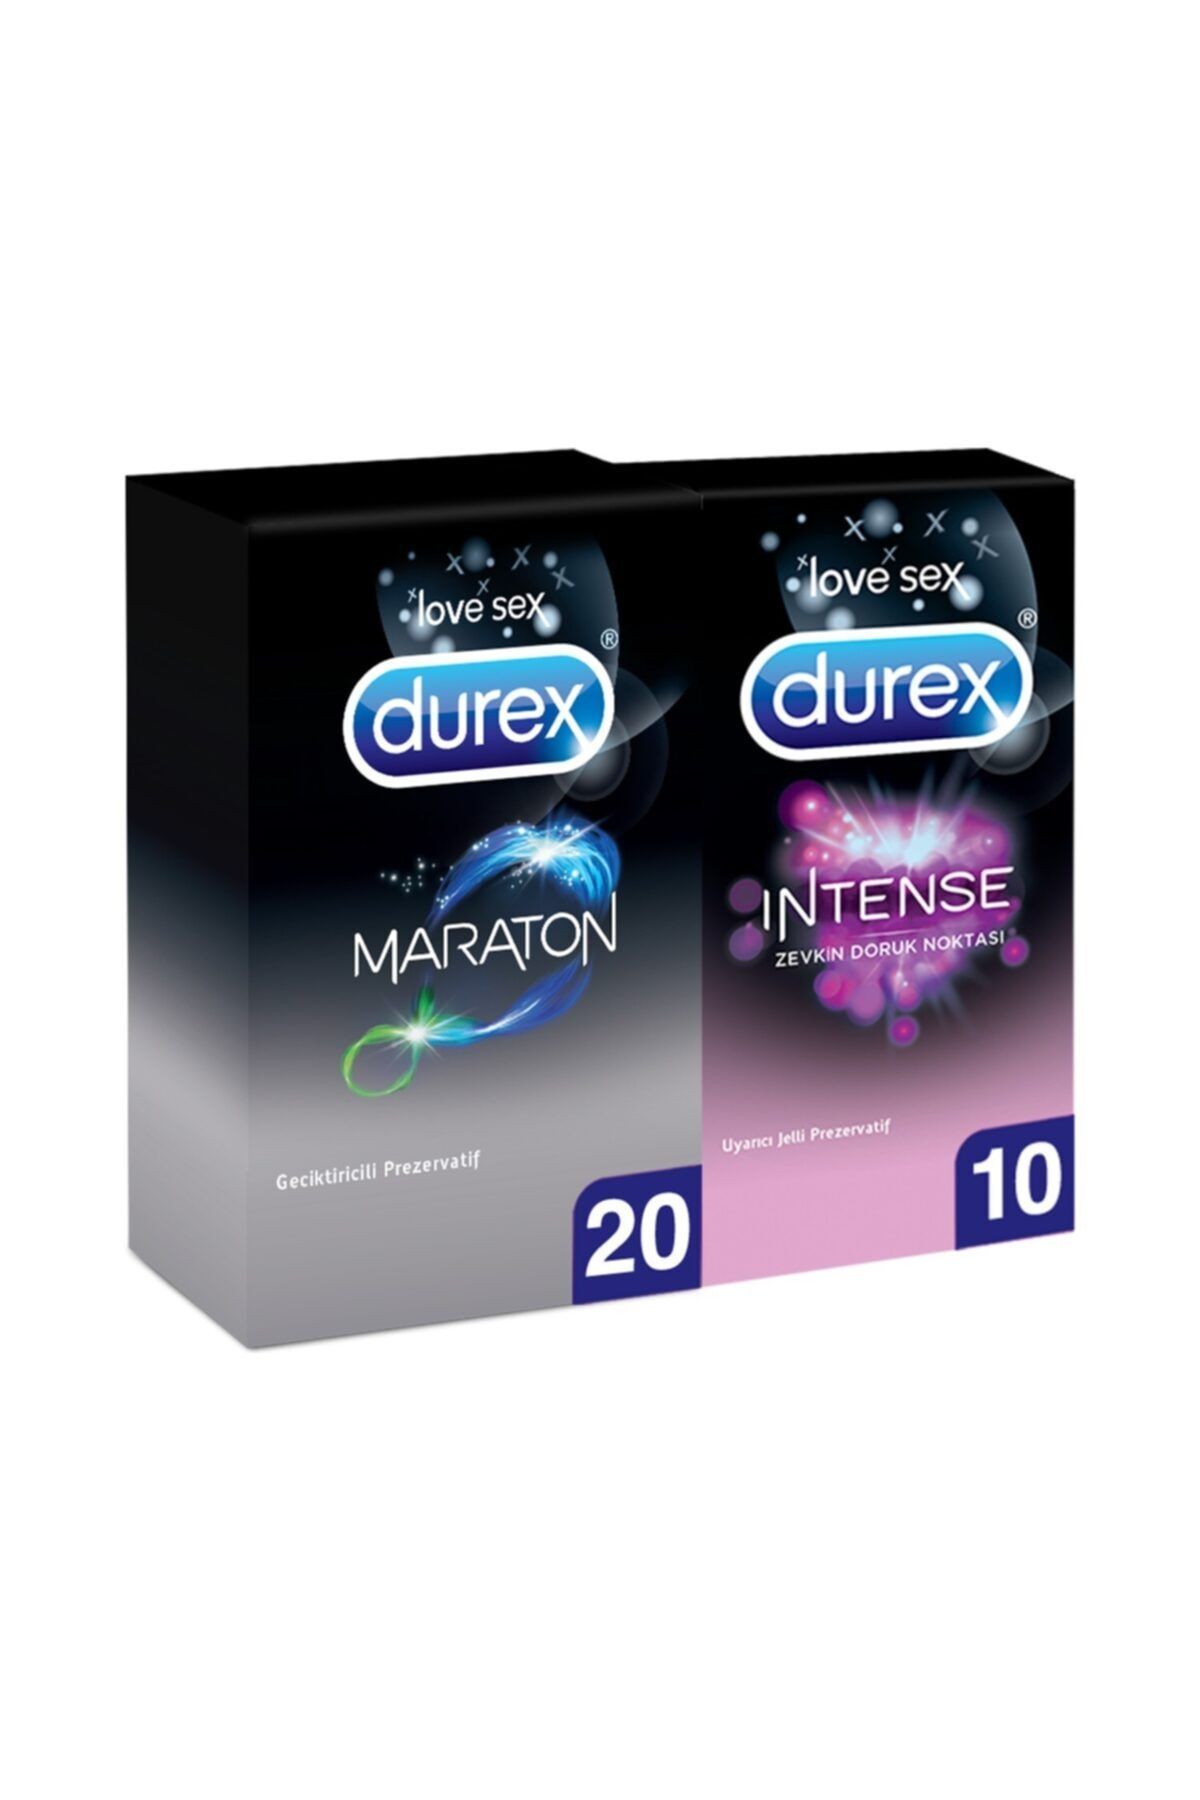 Durex Maraton li Prezervatif 20'li + Intense 10'lu Prezervatif